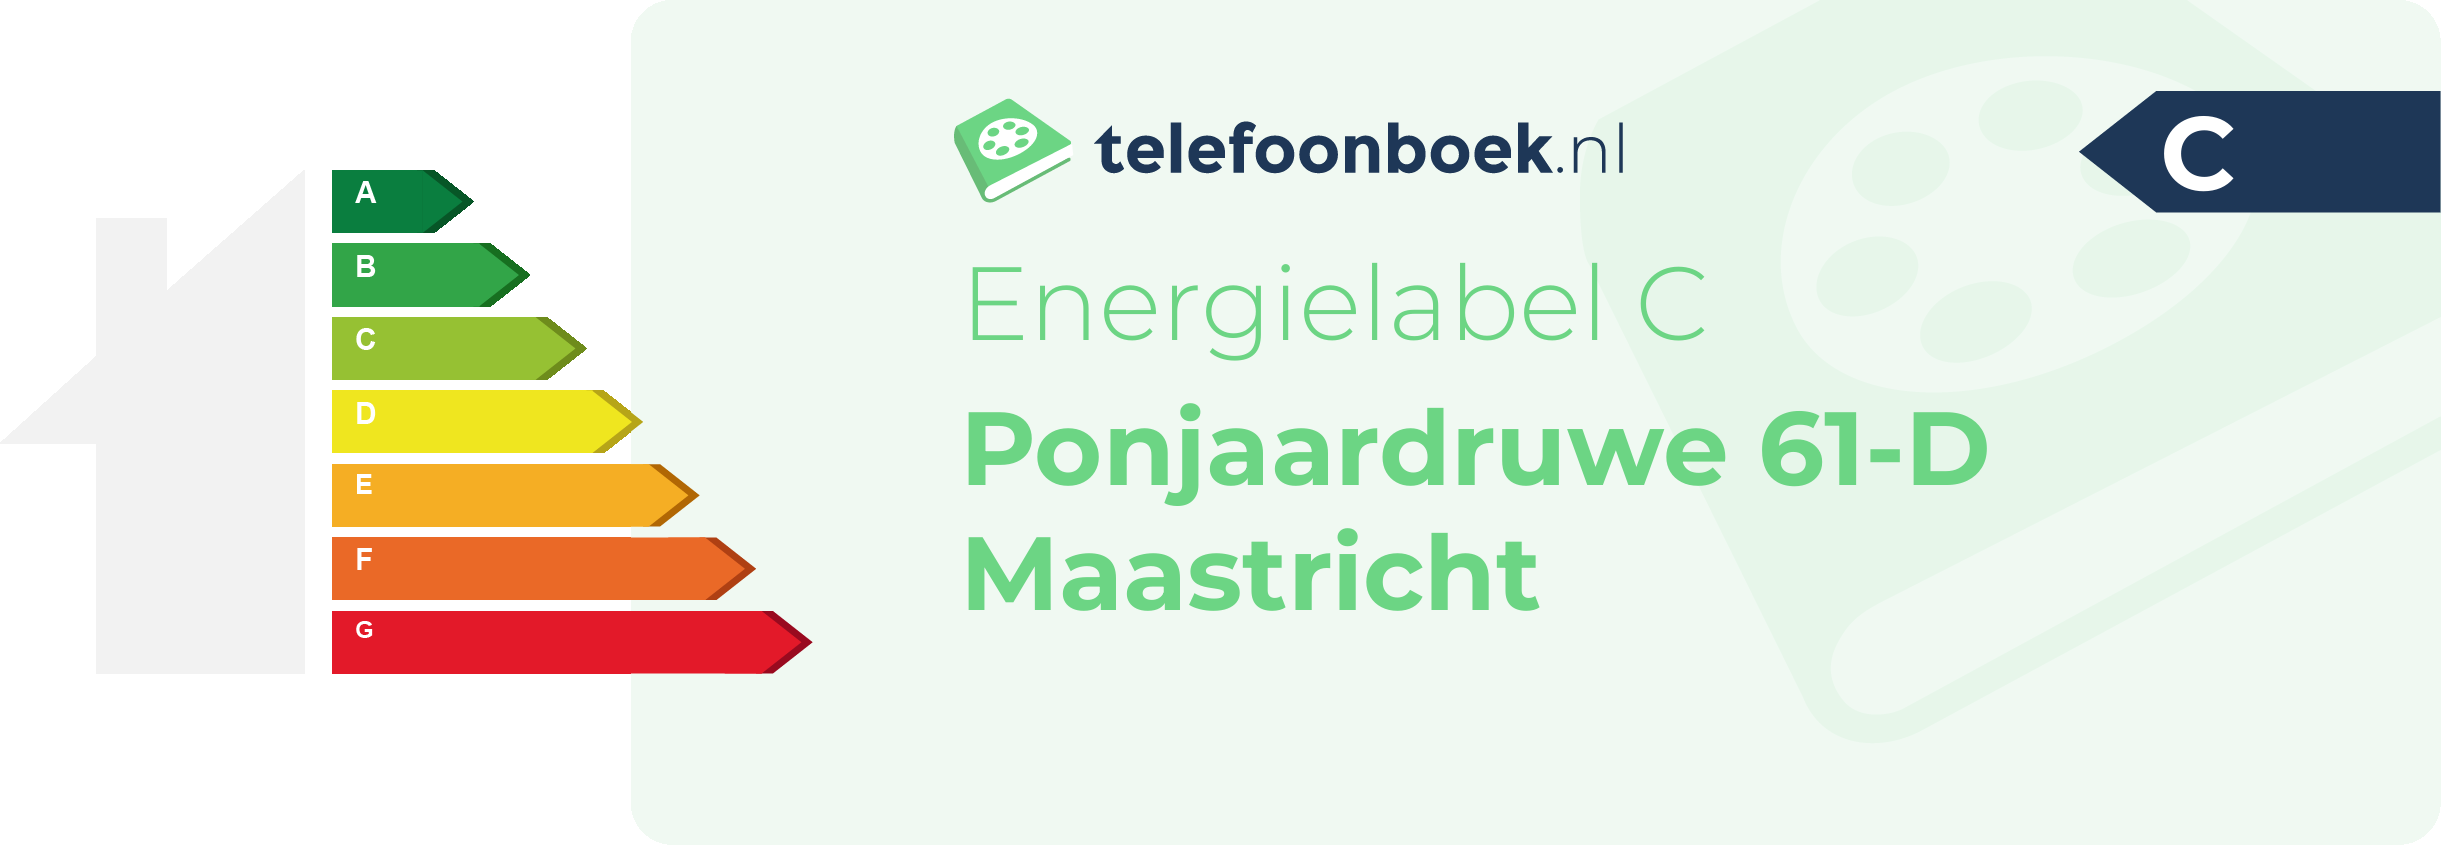 Energielabel Ponjaardruwe 61-D Maastricht